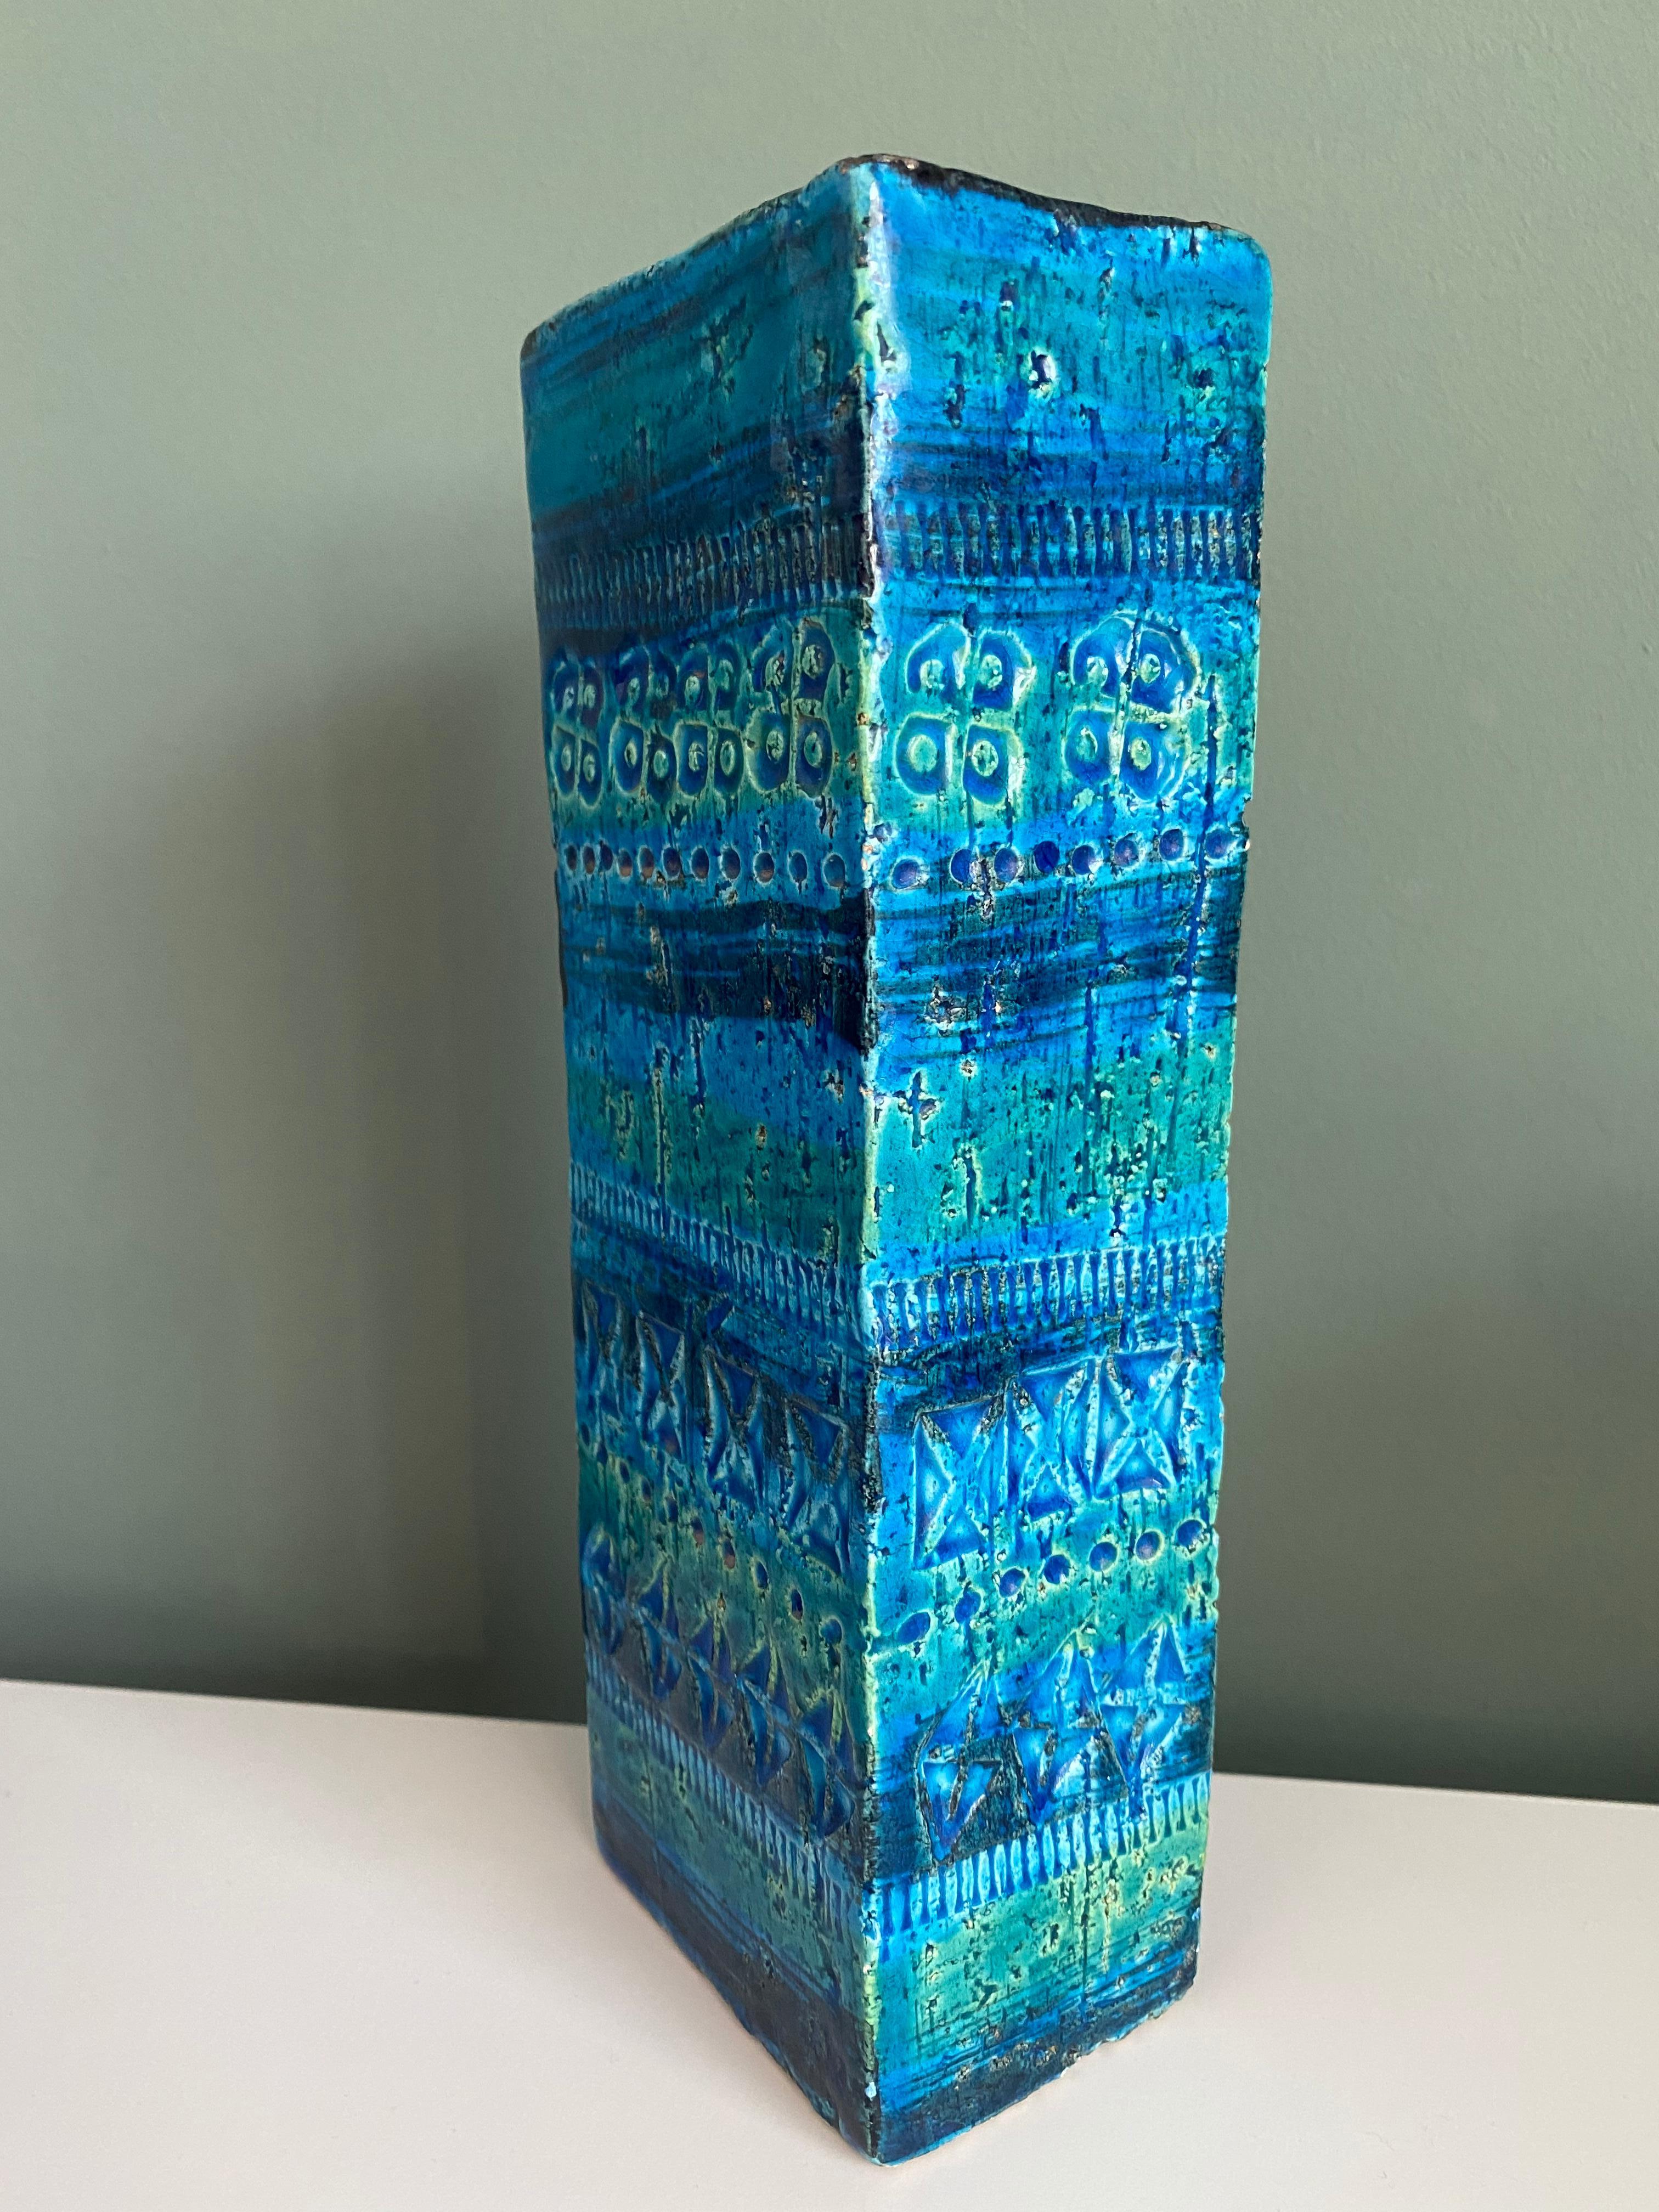 Rhimini Blue Bitossi Vase by Aldo Londi Italy 60‘s For Sale 1